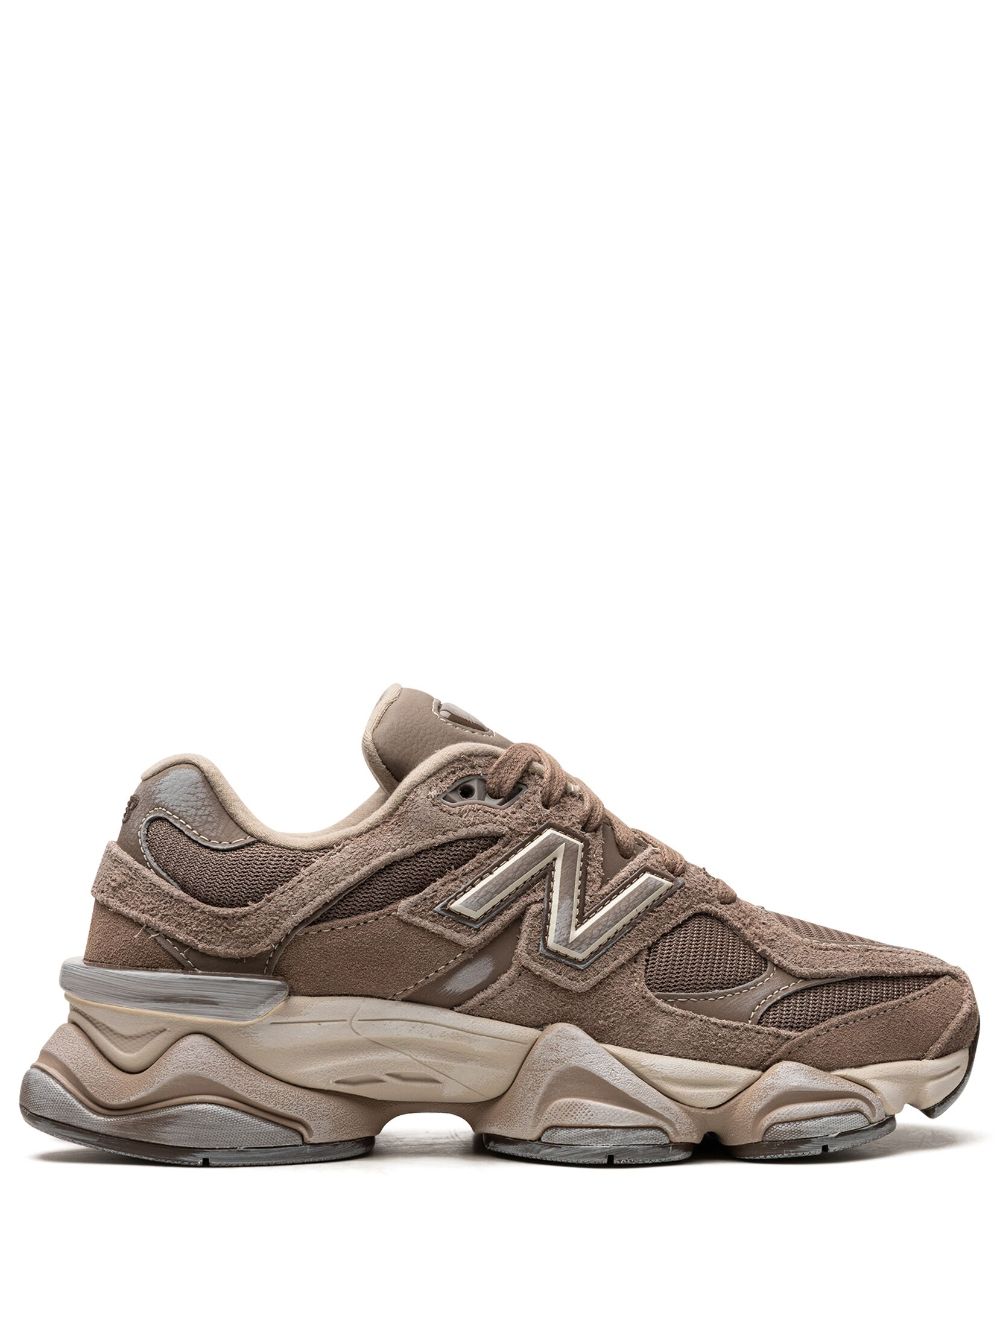 New Balance 9060 "Mushroom Brown" sneakers - Bruin